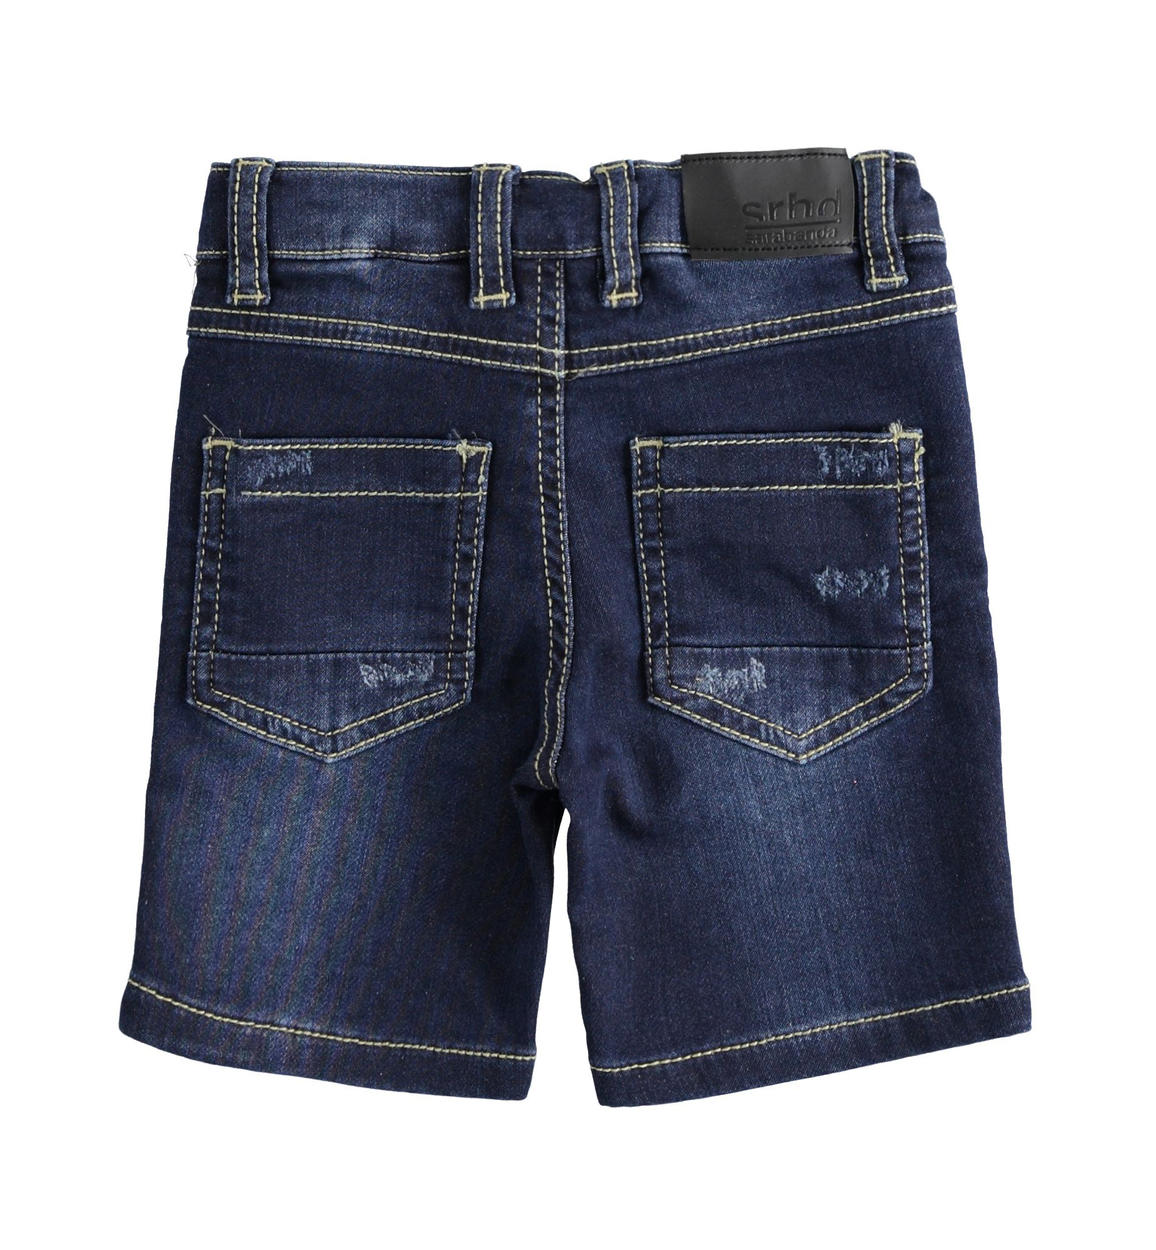 Pantalone corto in denim maglia con toppe per bambino da 6 mesi a 7 anni  Sarabanda - PANTALONI - 6-36 Mesi - Bambino